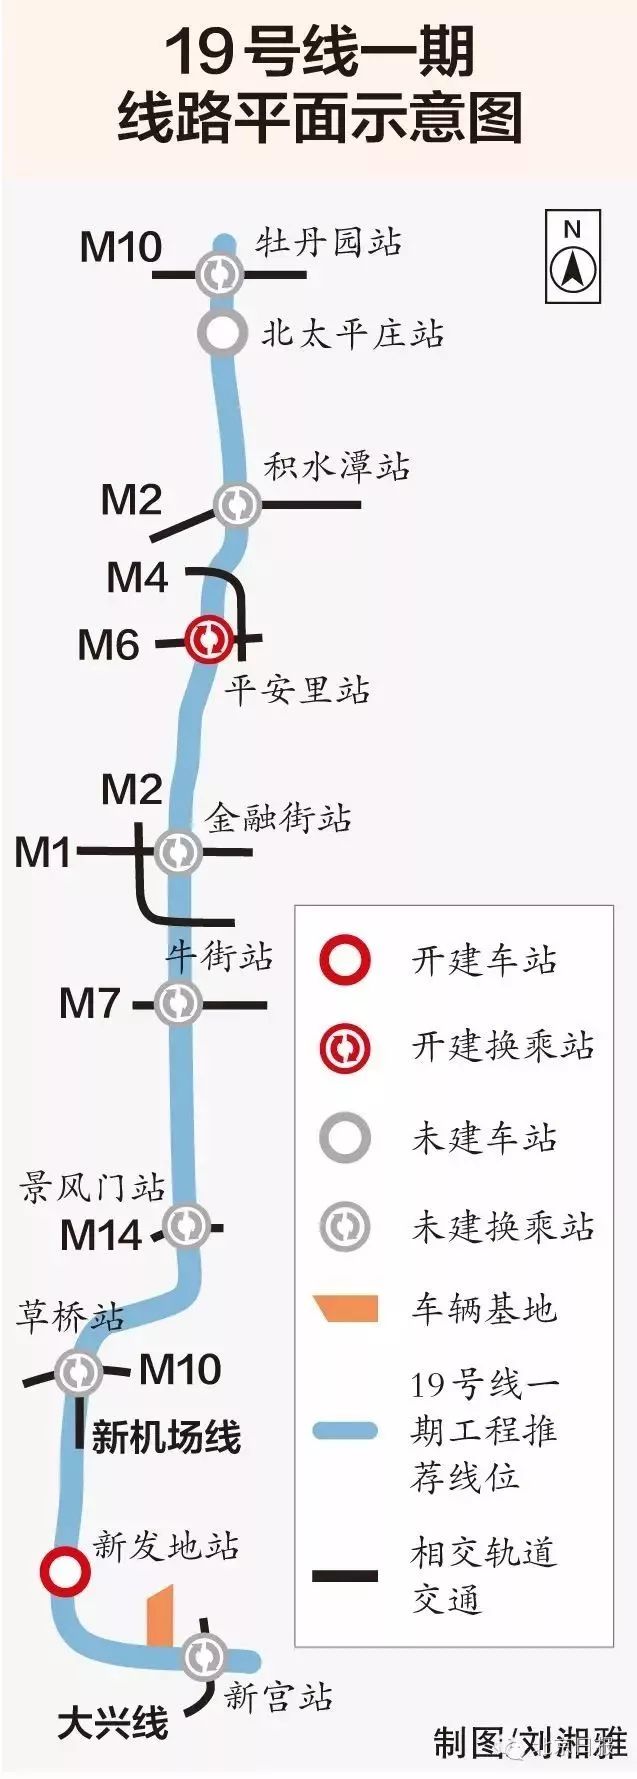 2019年北京17条在建地铁线路图全在此